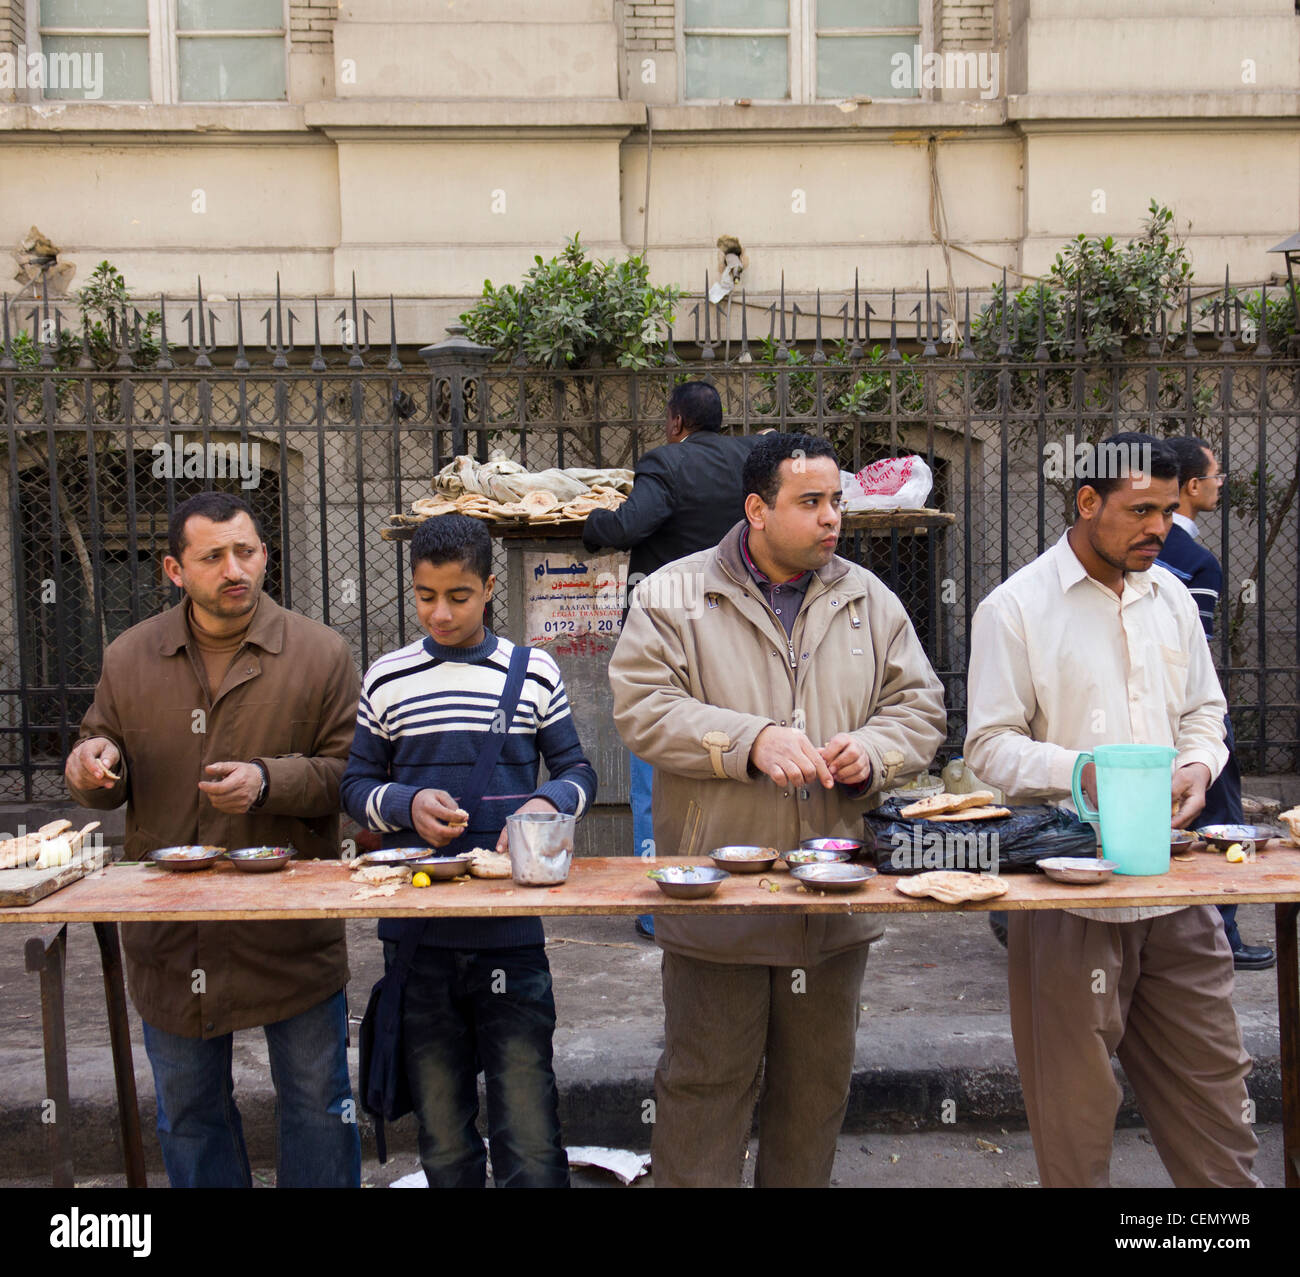 Männer und jungen Essen am Straßenrand stand, Kairo, Ägypten Stockfoto